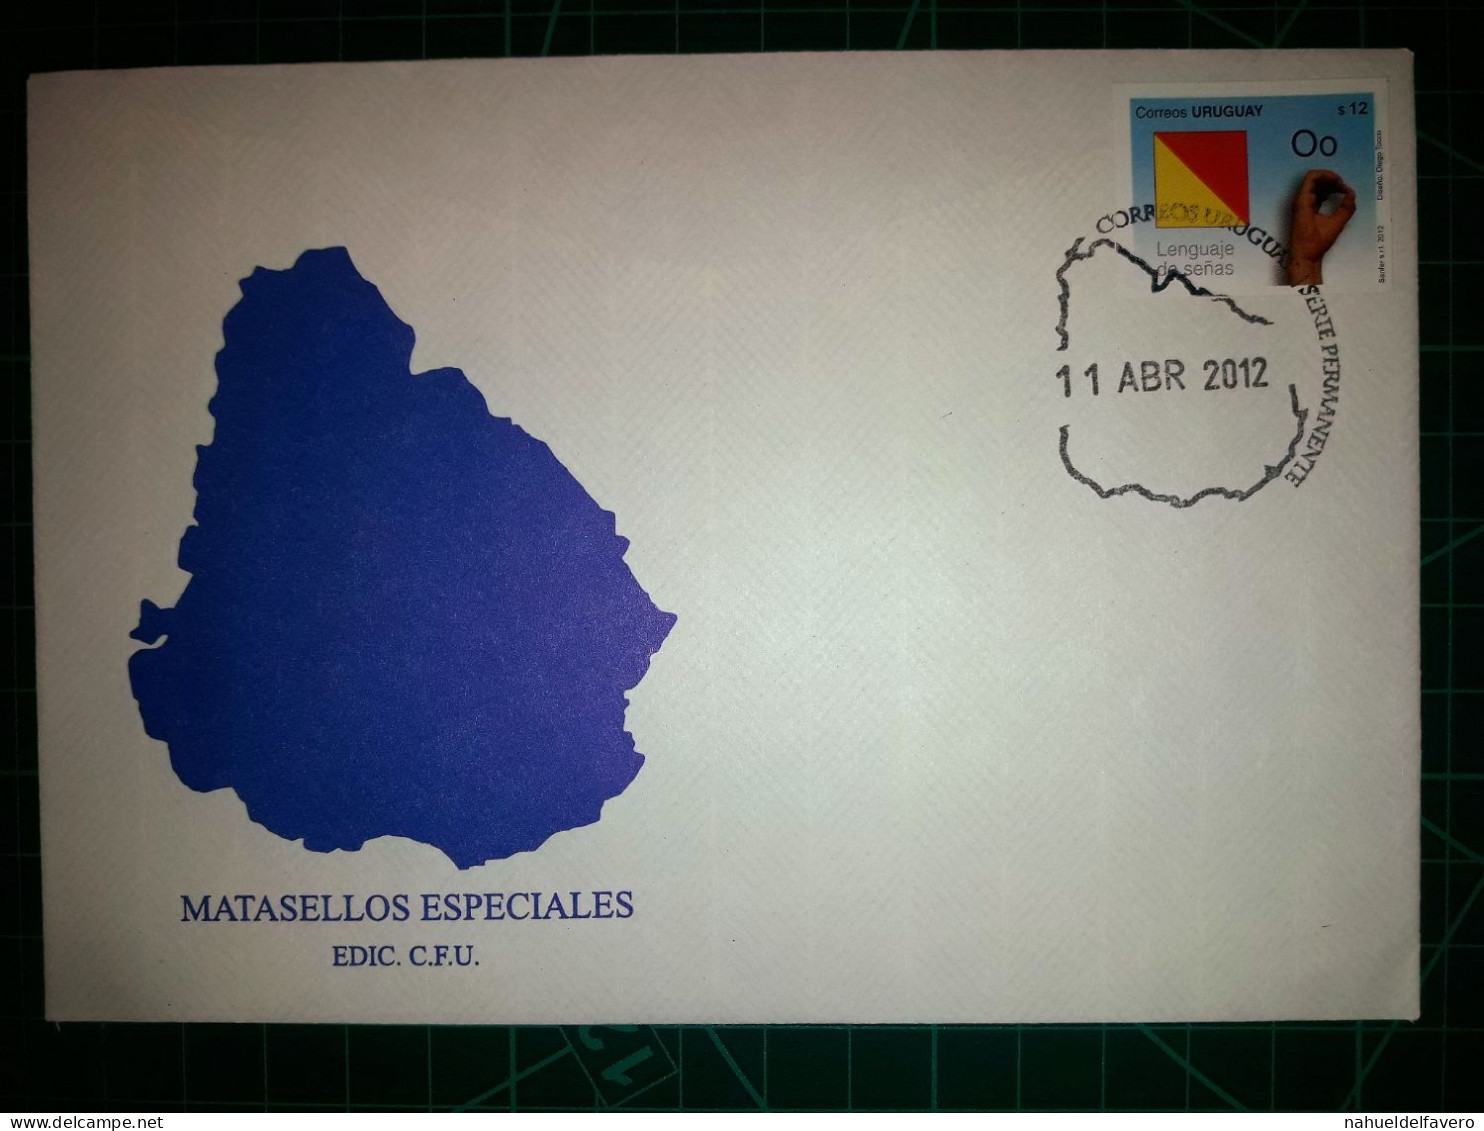 RÉPUBLIQUE ORIENTALE DE L'URUGUAY, Enveloppe FDC Commémorative Avec Timbre-poste Coloré (Proceres De La Patria, Bâtiment - Uruguay